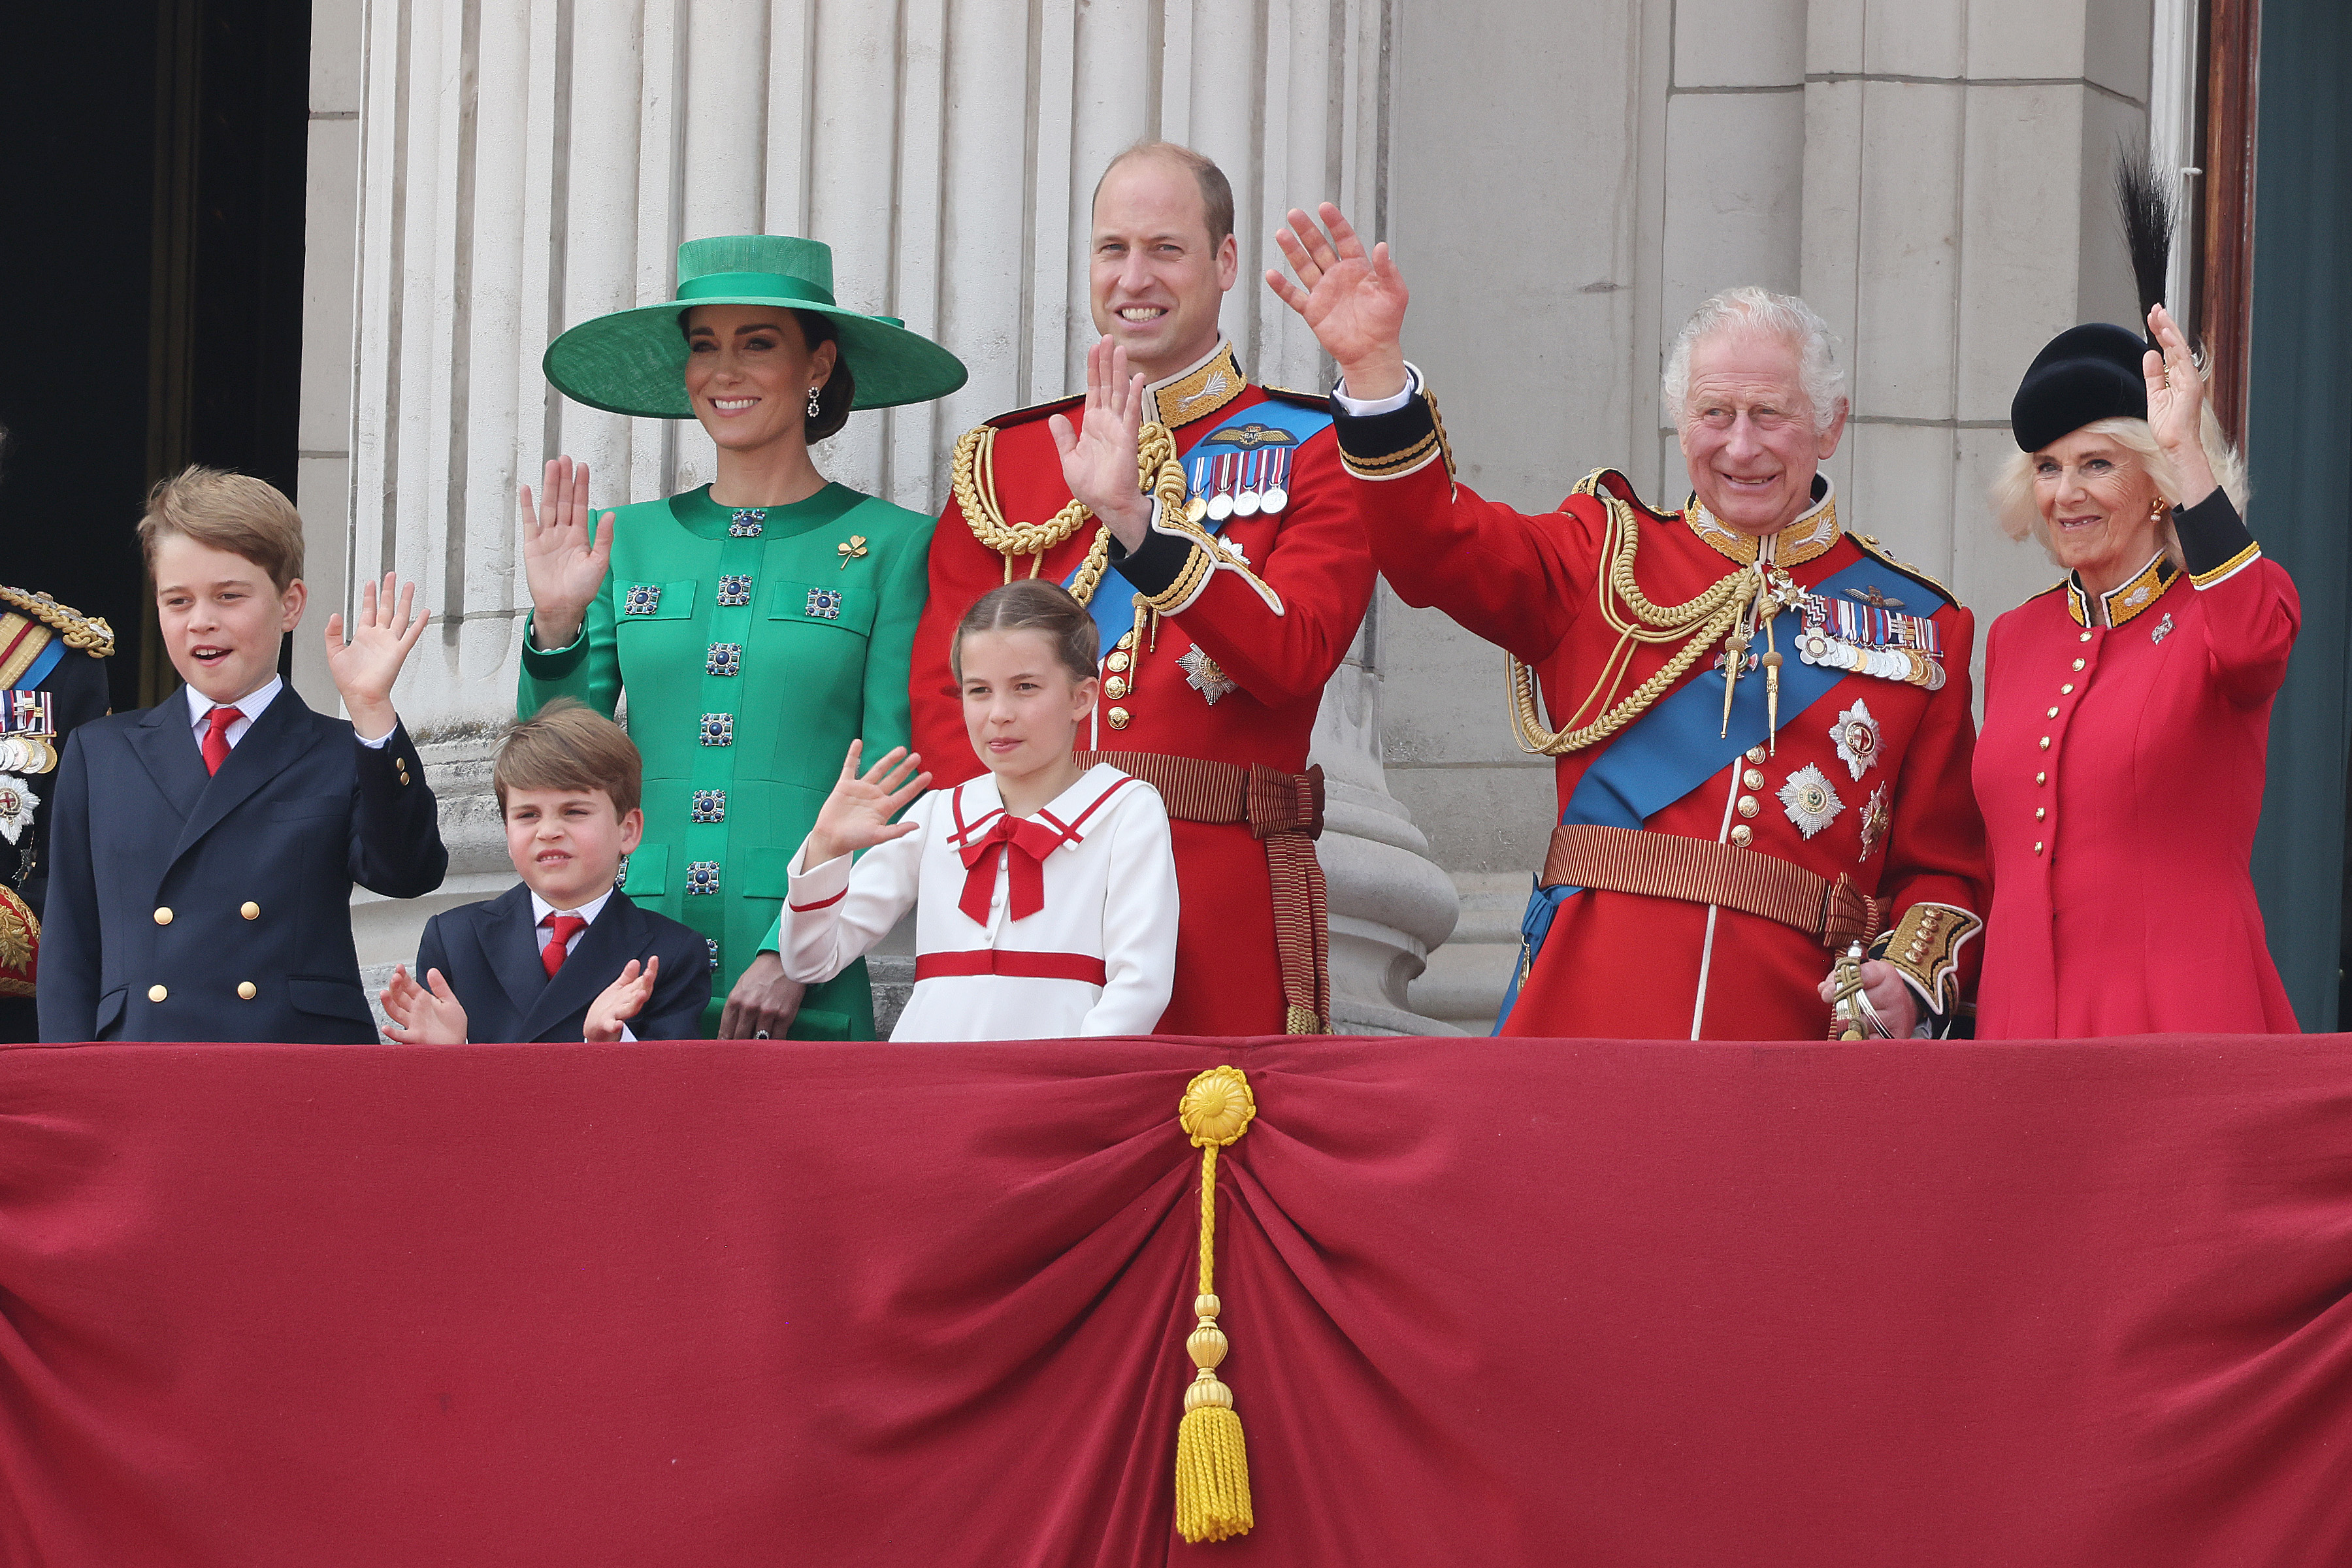 La princesa Catherine, el príncipe William, la reina Camilla, el rey Charles III, el príncipe George, la princesa Charlotte y el príncipe Louis en el balcón del palacio de Buckingham durante Trooping the Colour el 17 de junio de 2023 en Londres, Inglaterra | Foto: Getty Images